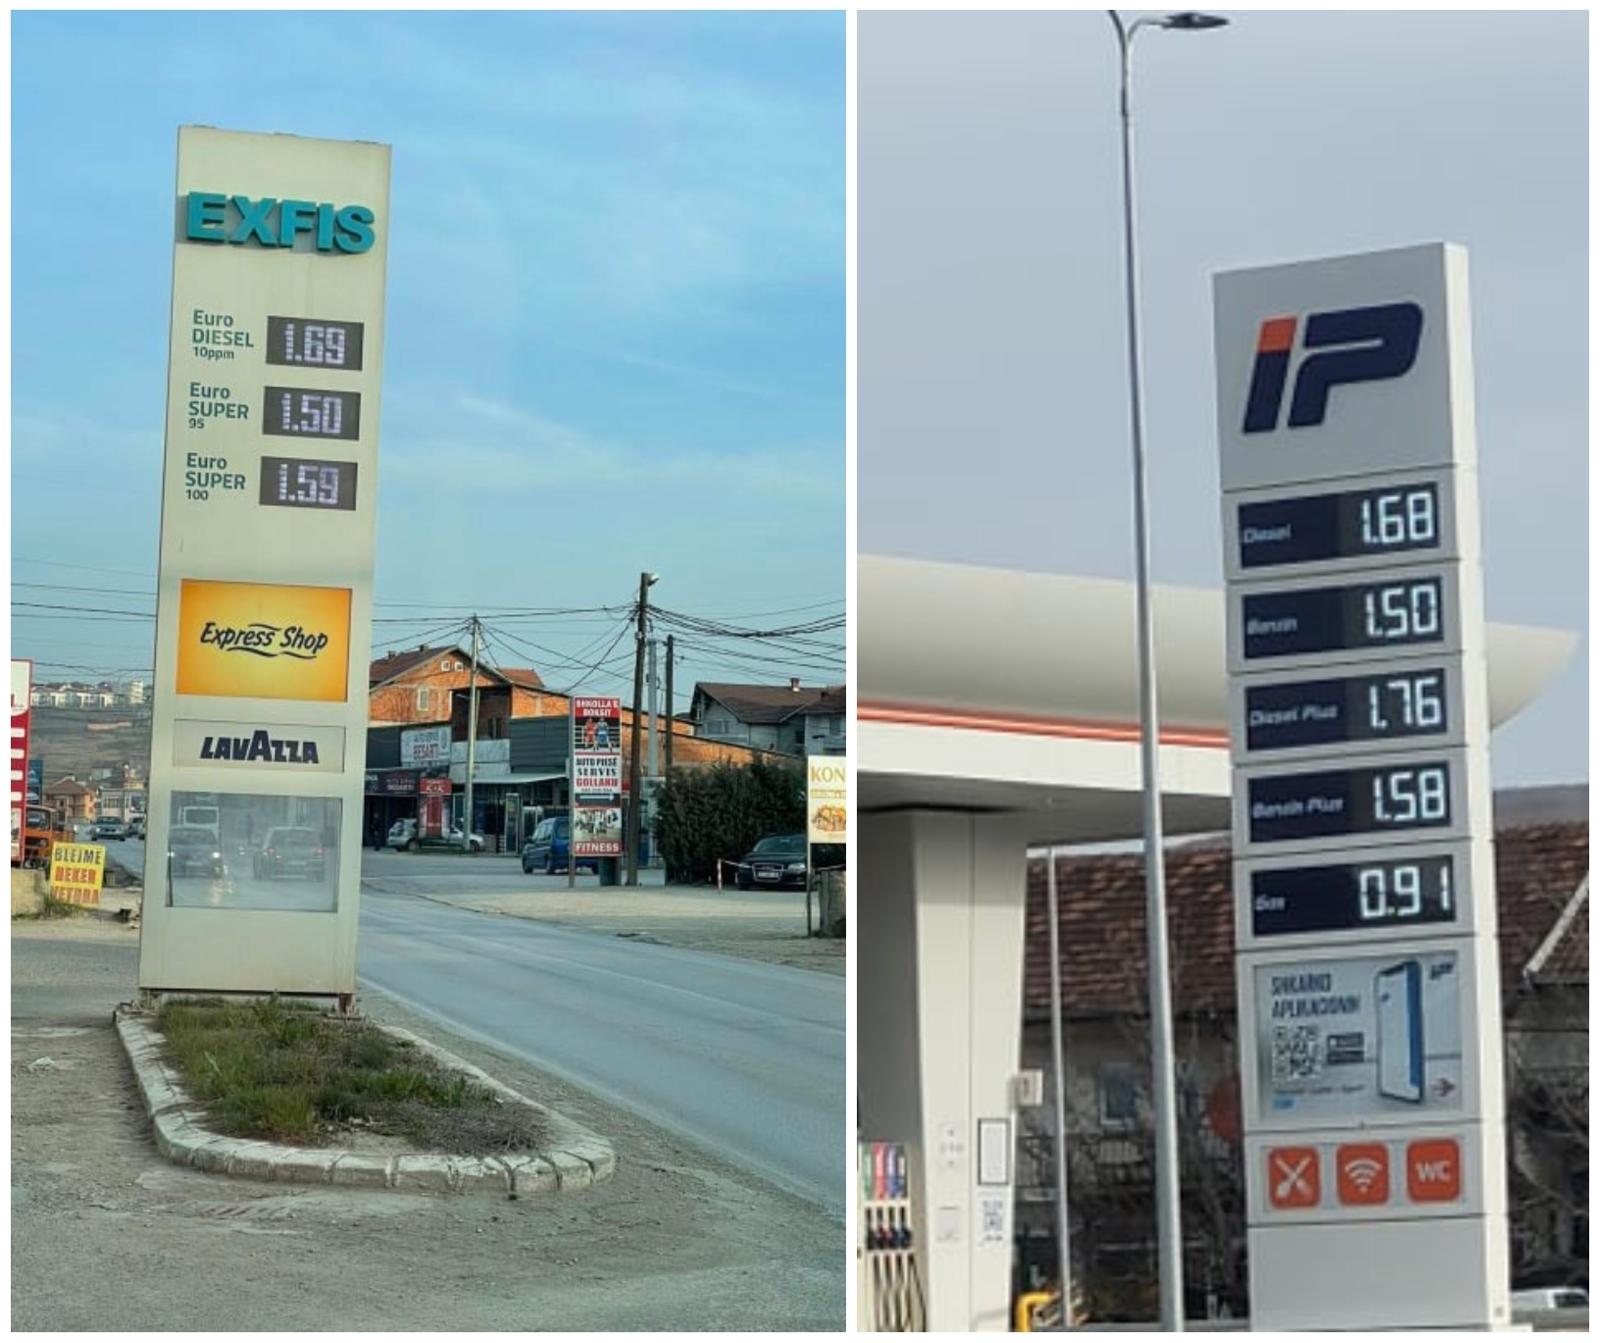 Përsëri rritje e madhe e çmimit të naftës sot në Kosovë, shikojeni shifrat ku kanë arritur ato